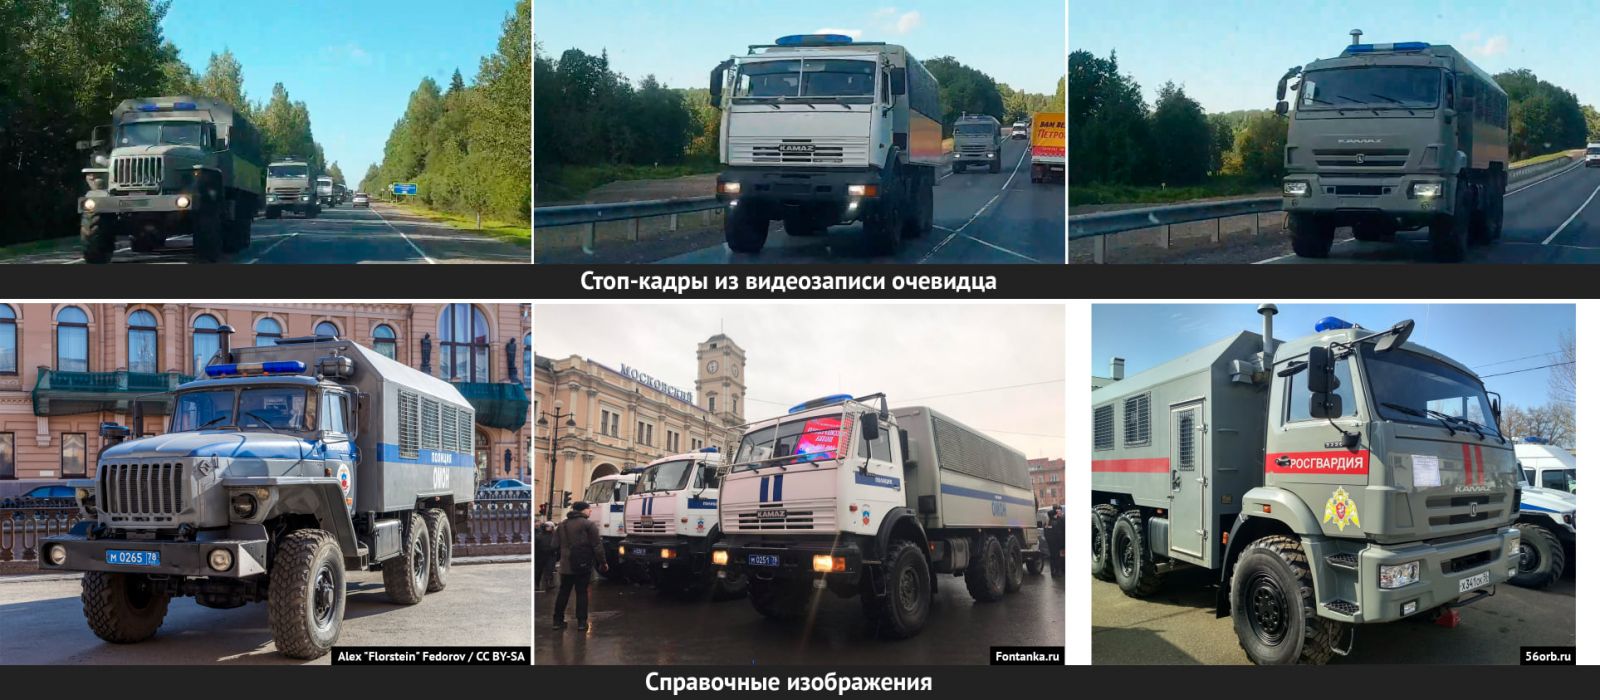 Колона російських автозаків рухається у бік Білорусі. Фото: Conflict Intelligence Team у Facebook